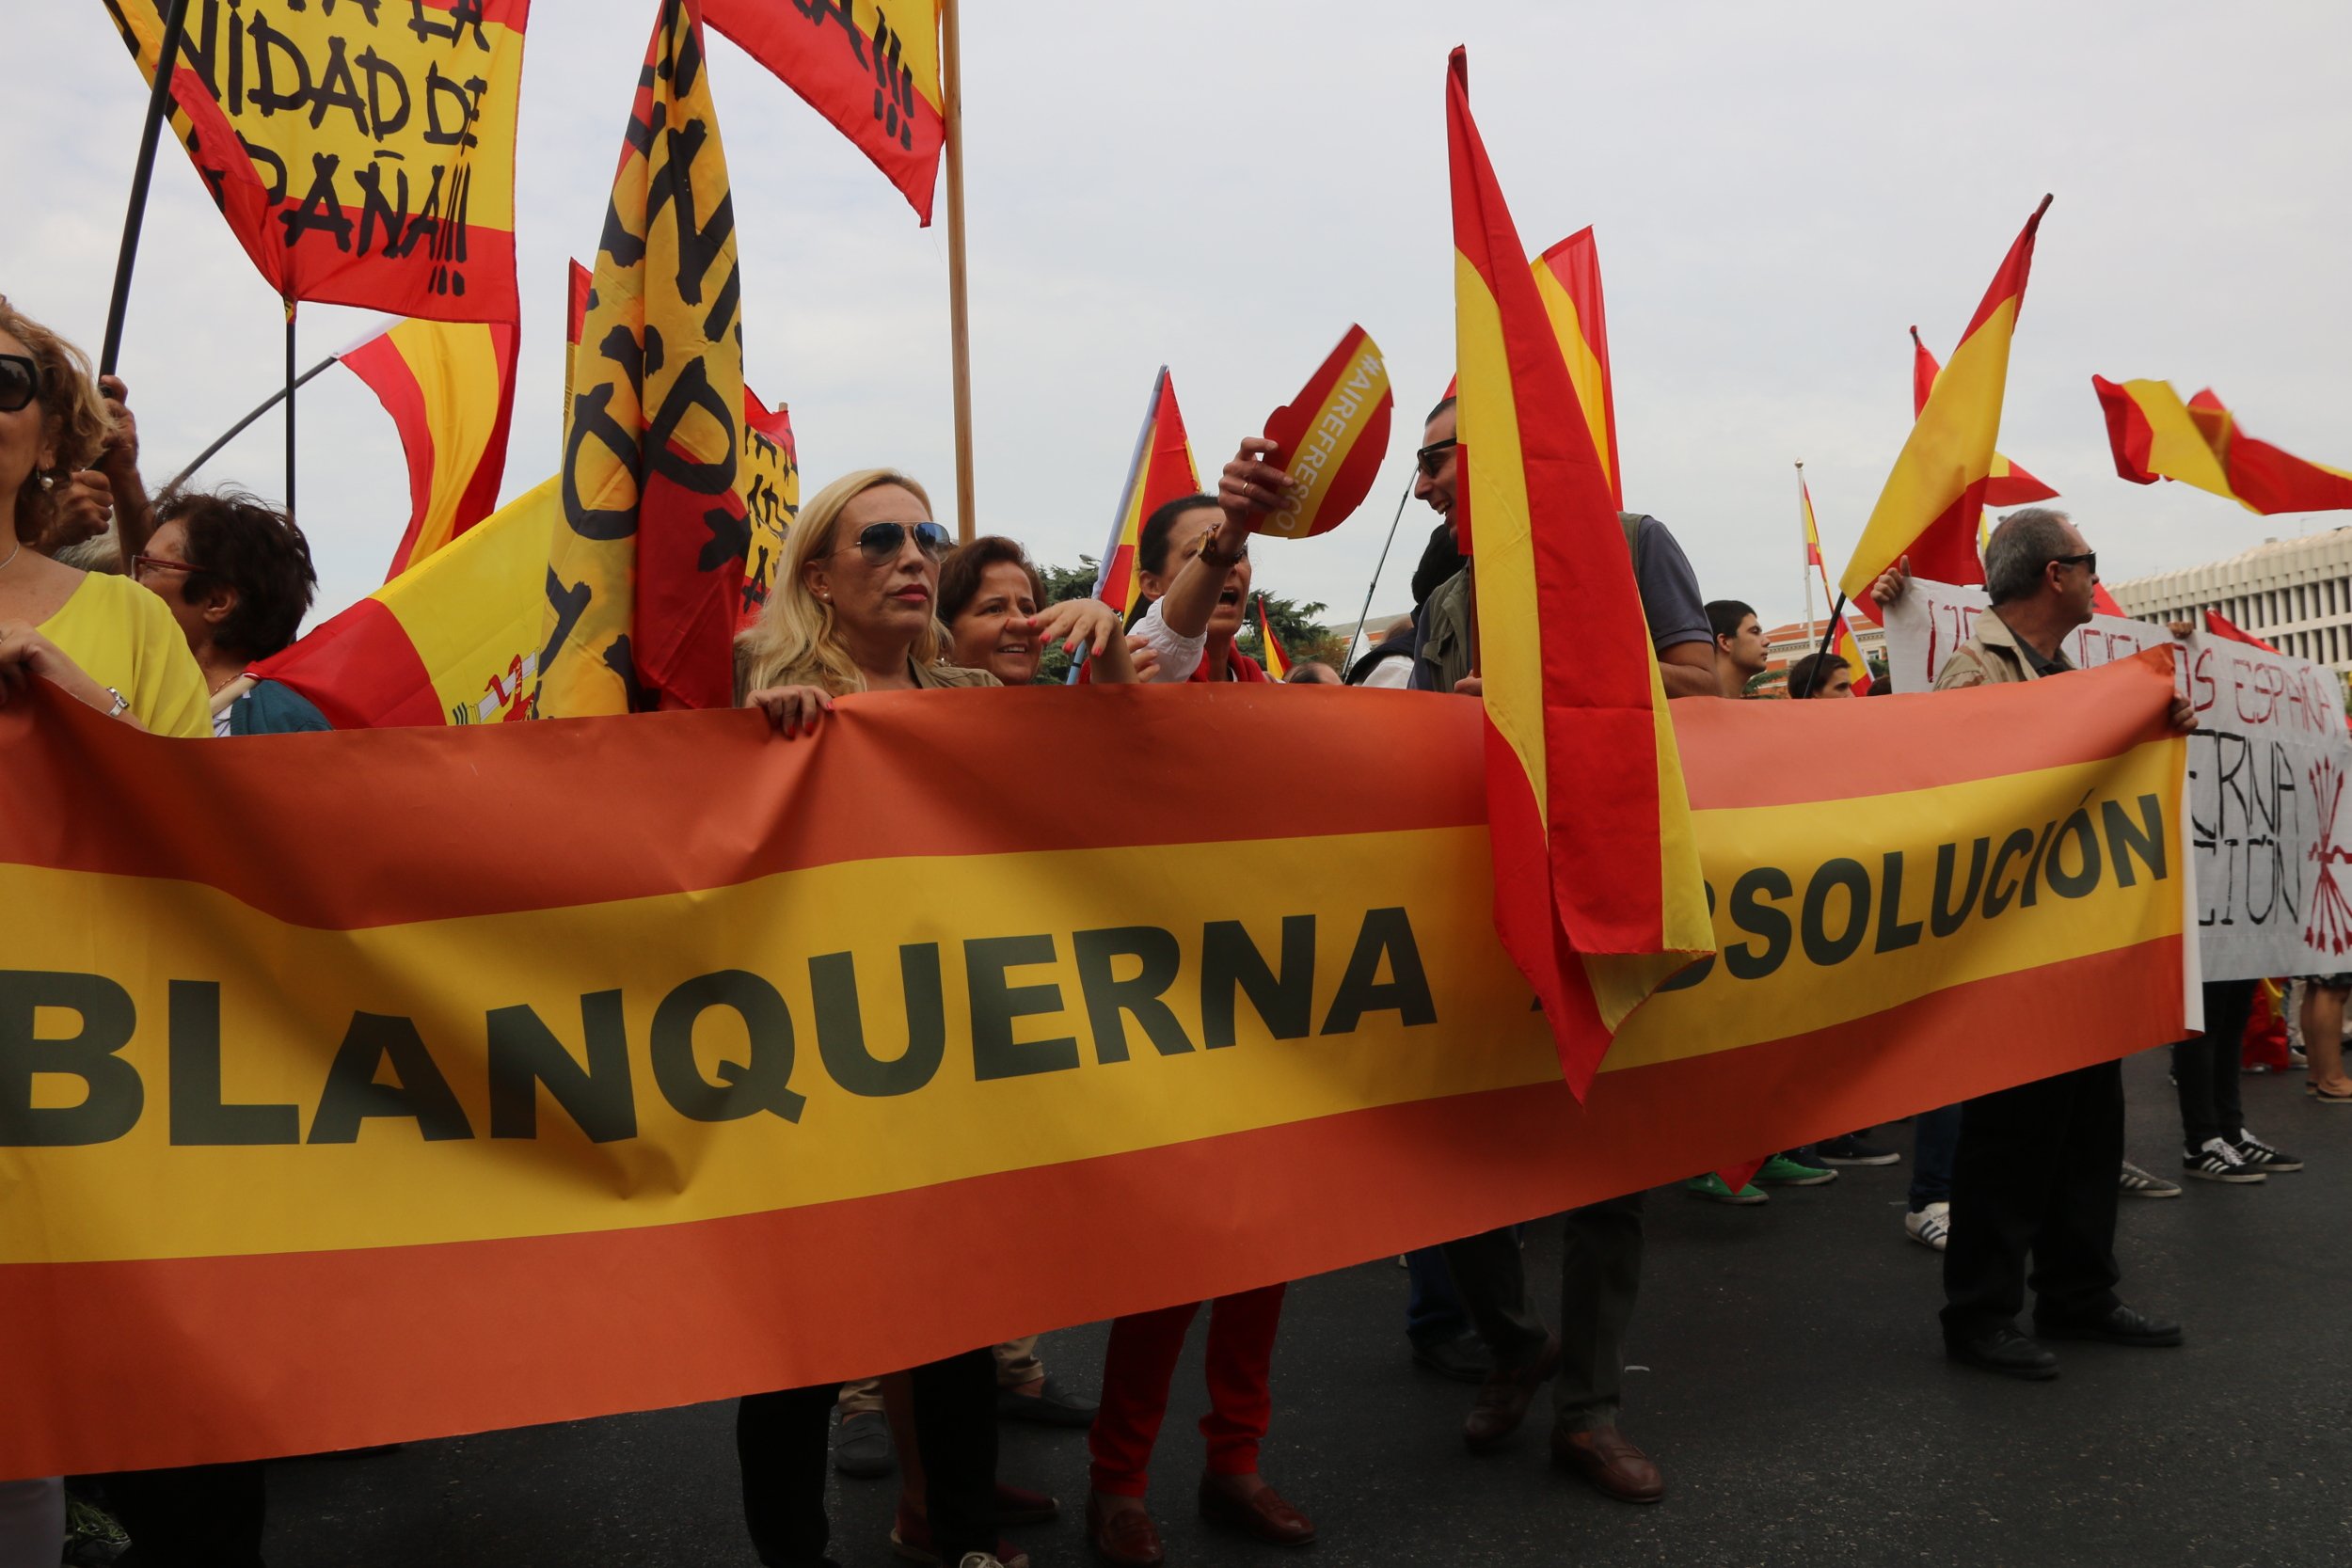 La xarxa esclata contra la llibertat dels ultres de Blanquerna